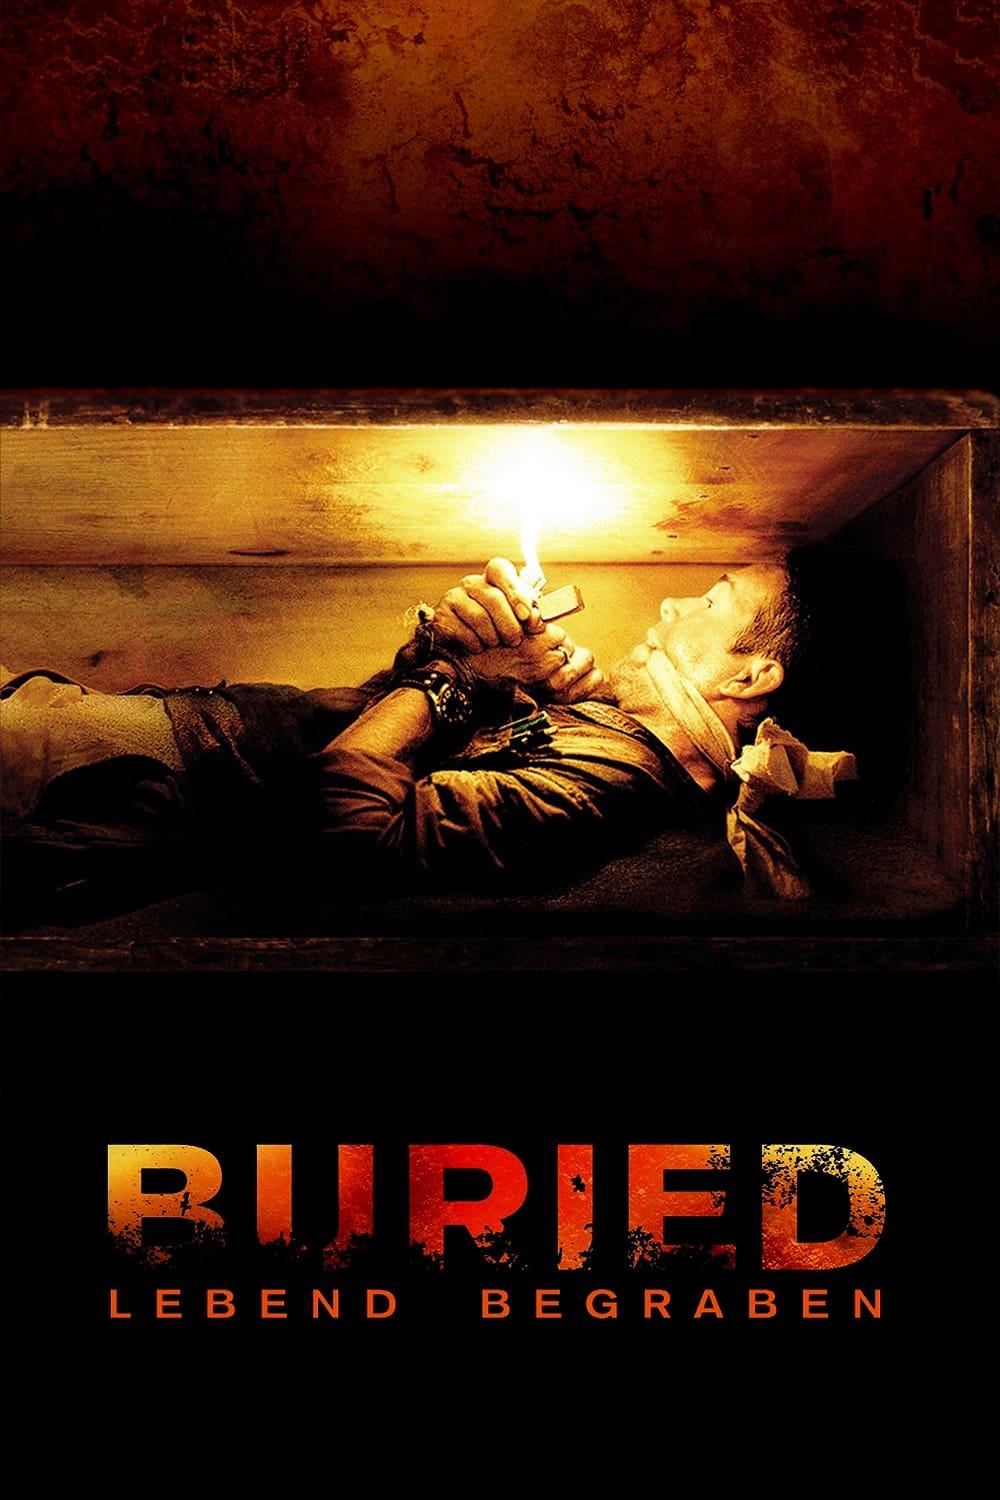 Buried - Lebend begraben poster